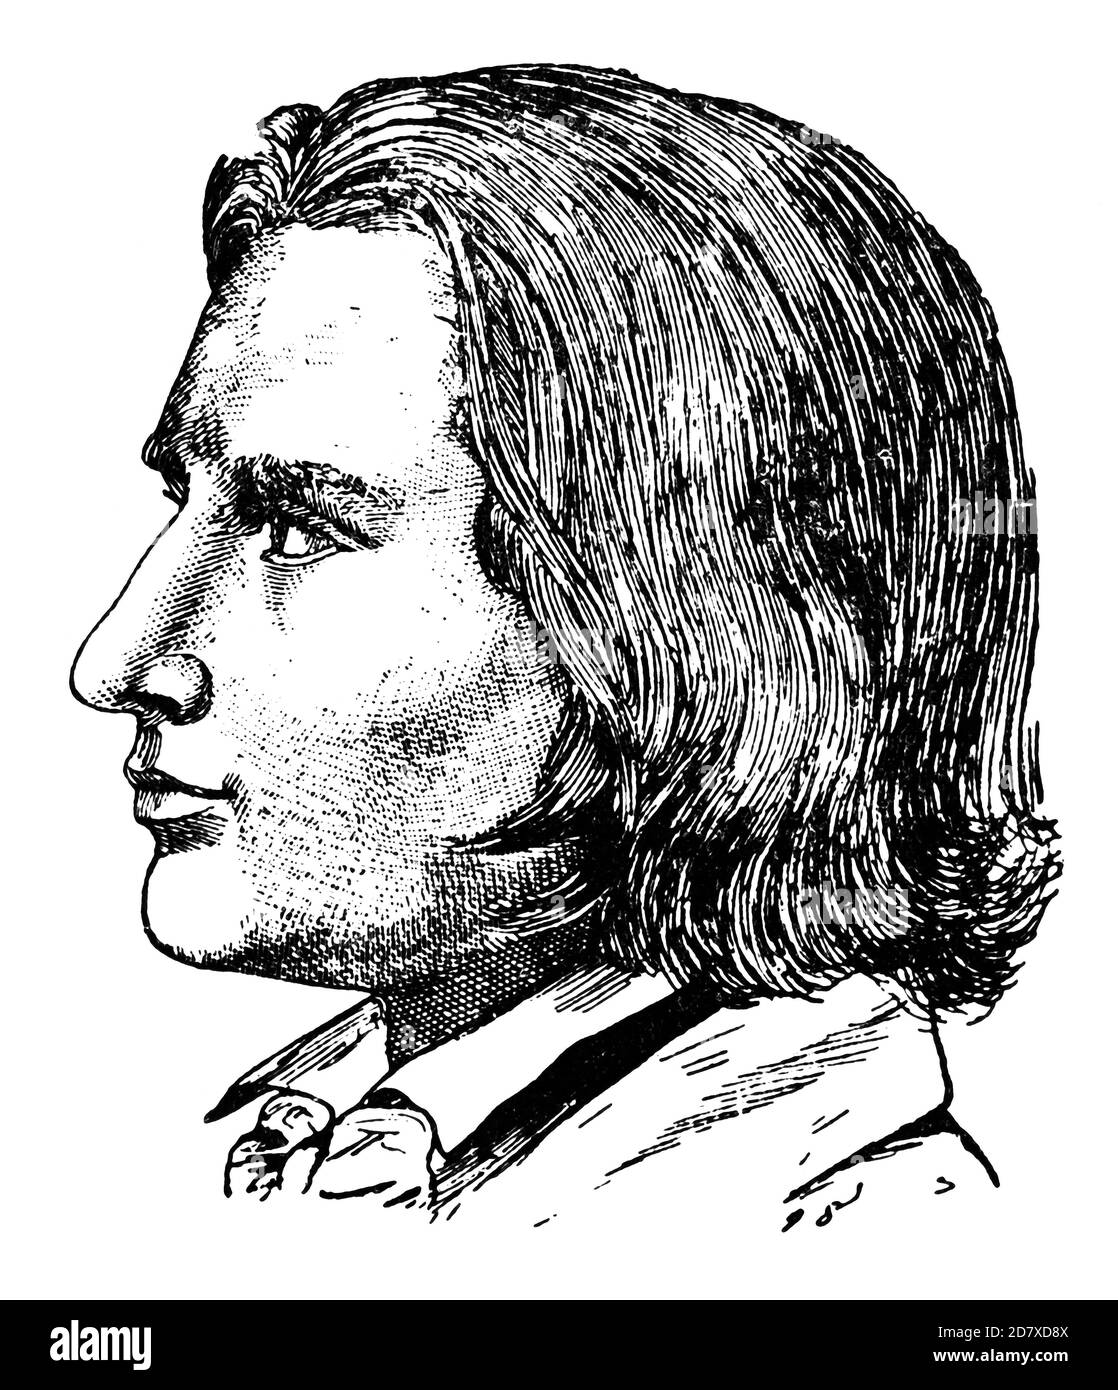 Ritratto di Franz Liszt (all'età di 25 anni) - un compositore, pianista virtuoso, direttore, insegnante di musica, arrangiatore e organista ungherese dell'era Romantica. Illustrazione del 19 ° secolo. Sfondo bianco. Foto Stock